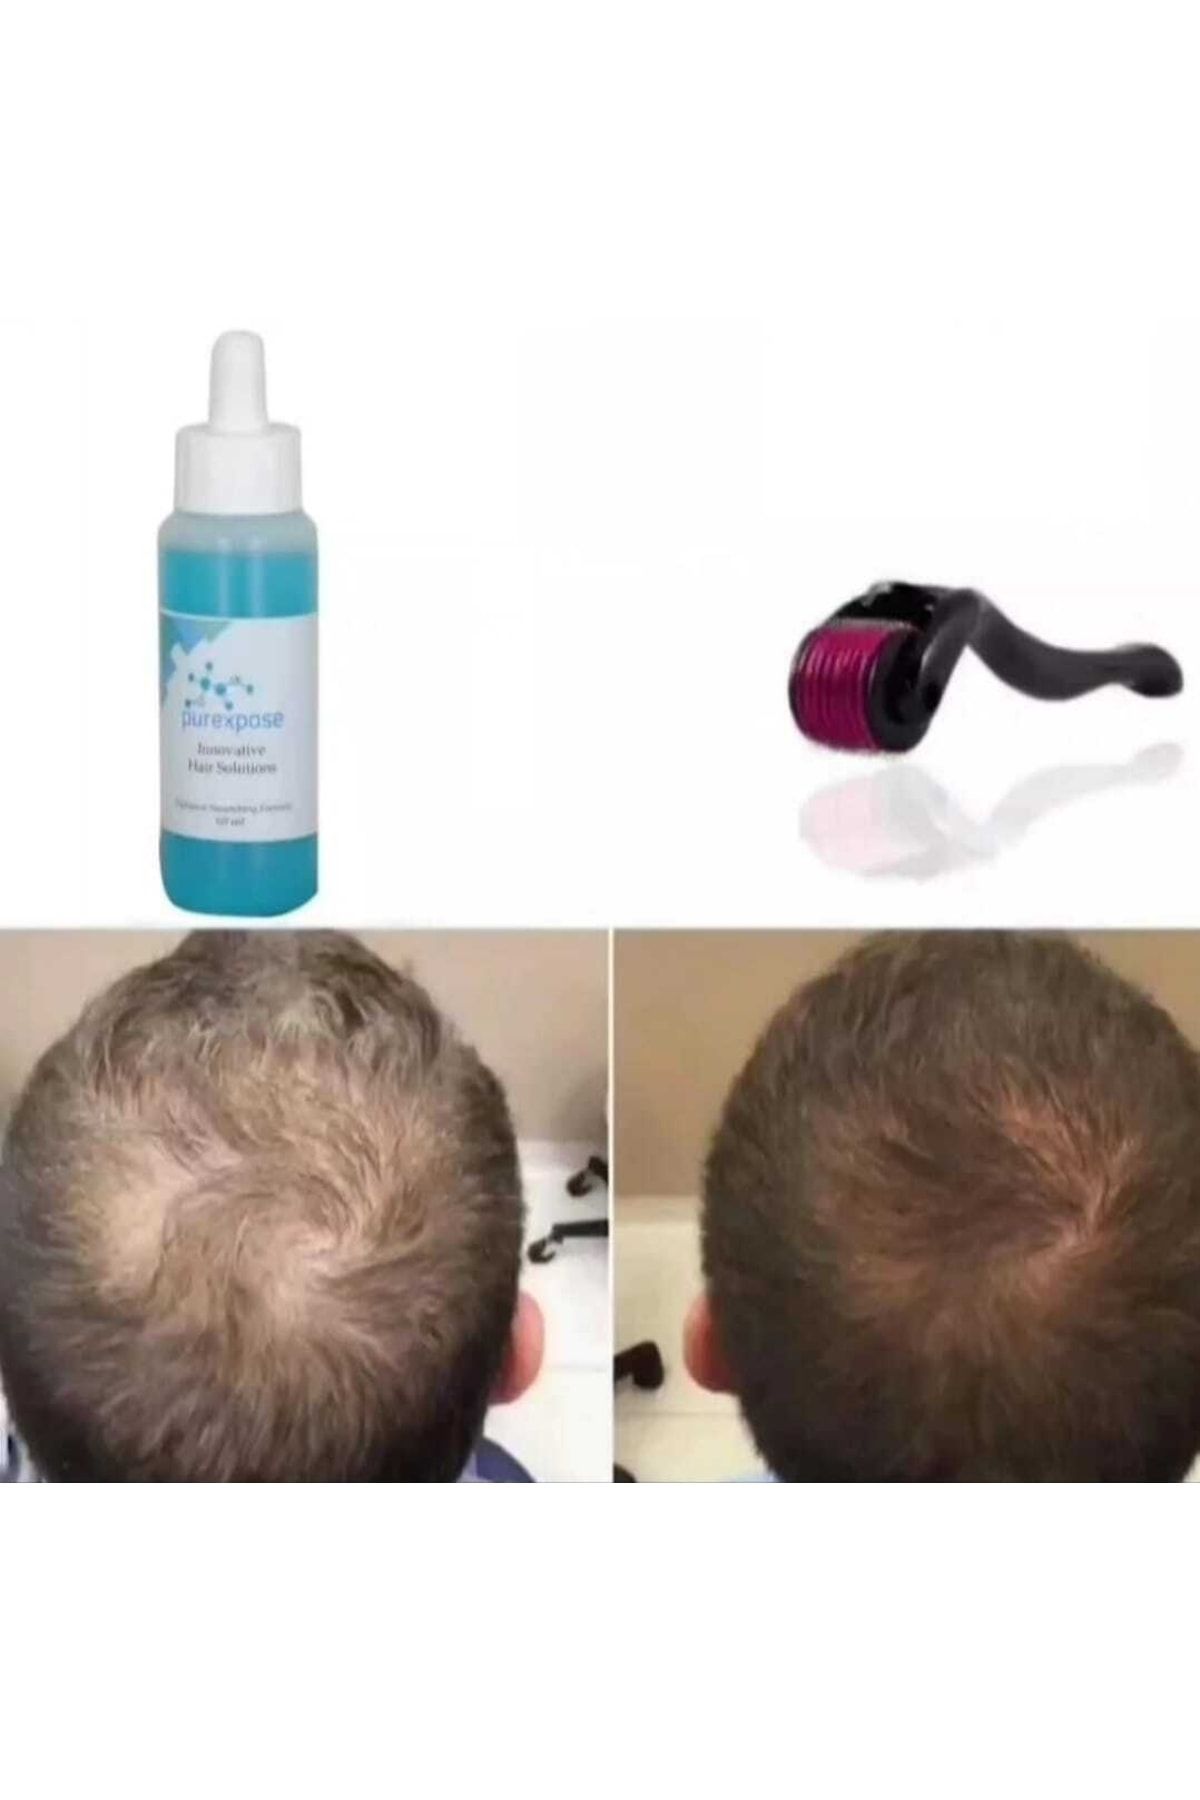 Purexpose Saç Serumu Saç Çıkarmaya Yardımcı Saç Besleyici Saç Gürleştirici Saç Losyon 1adet 1 Dermaroller